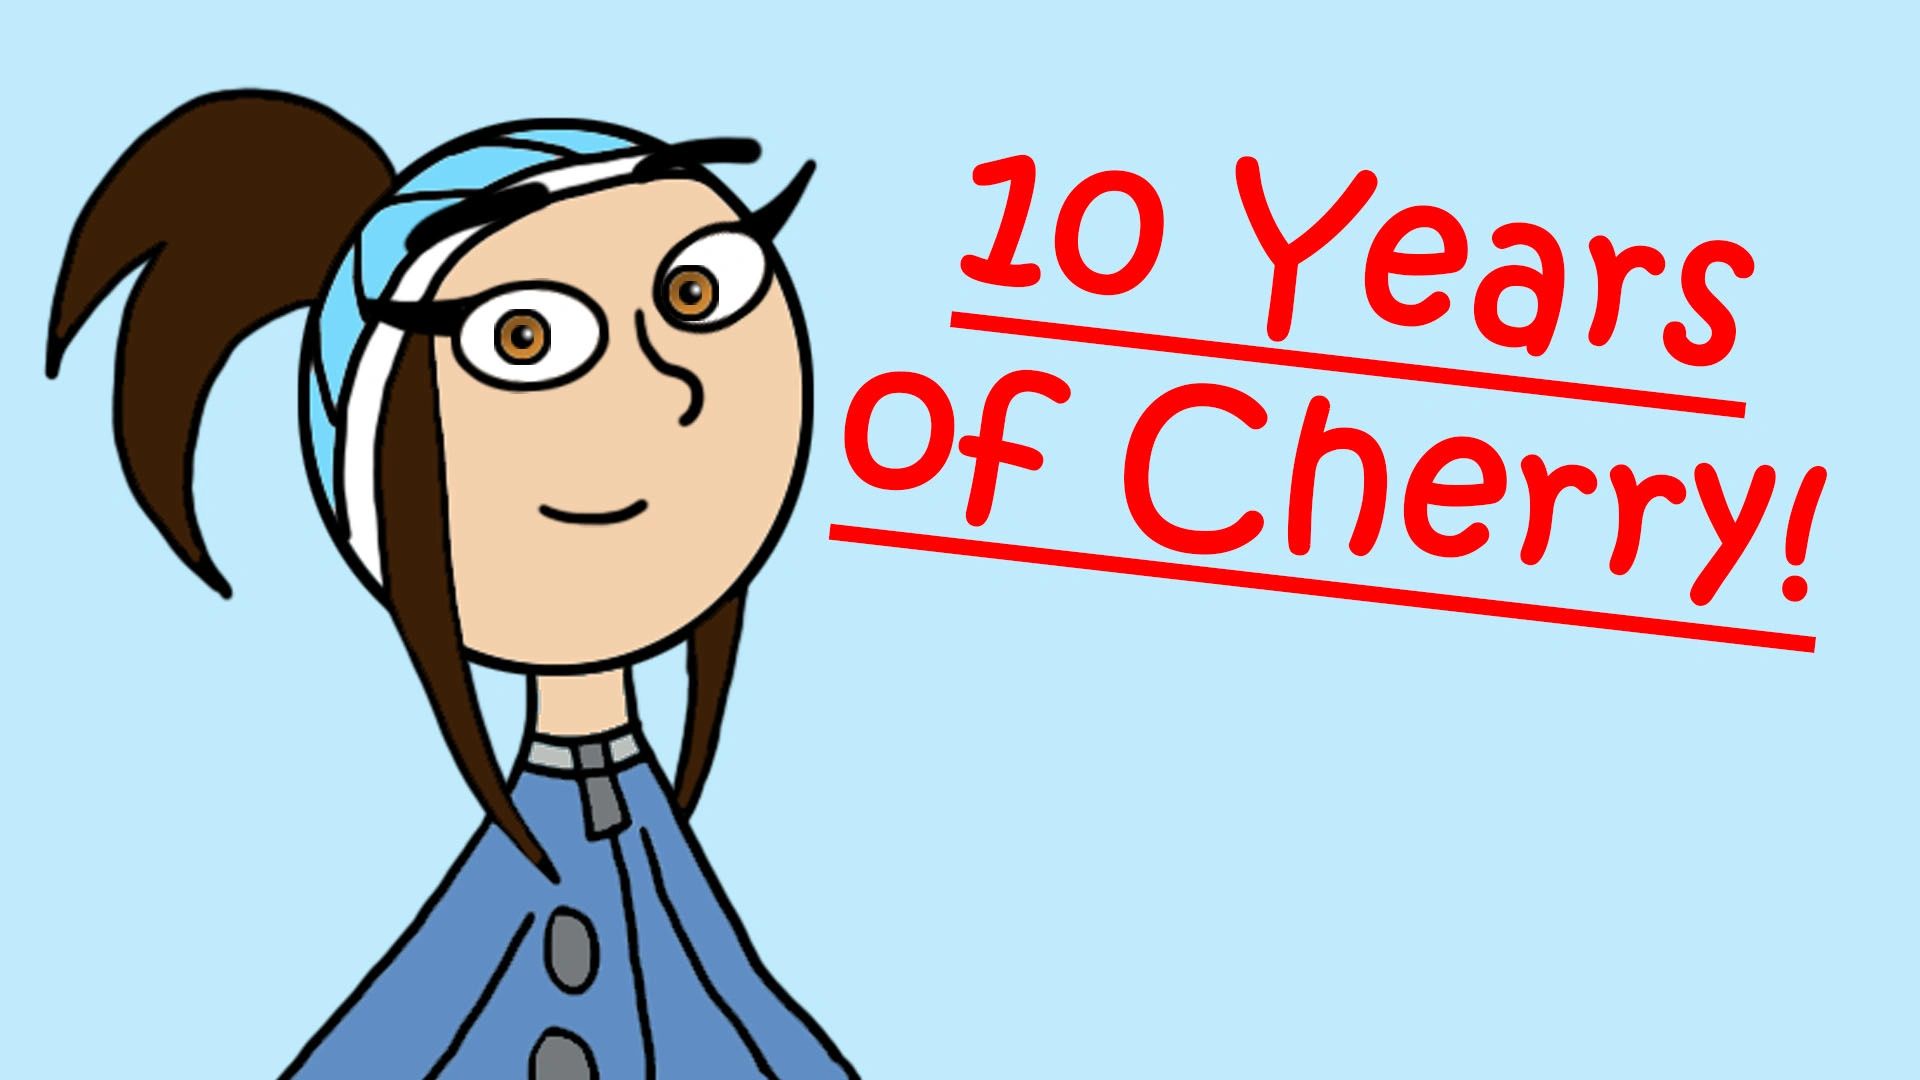 10 Years of Cherry